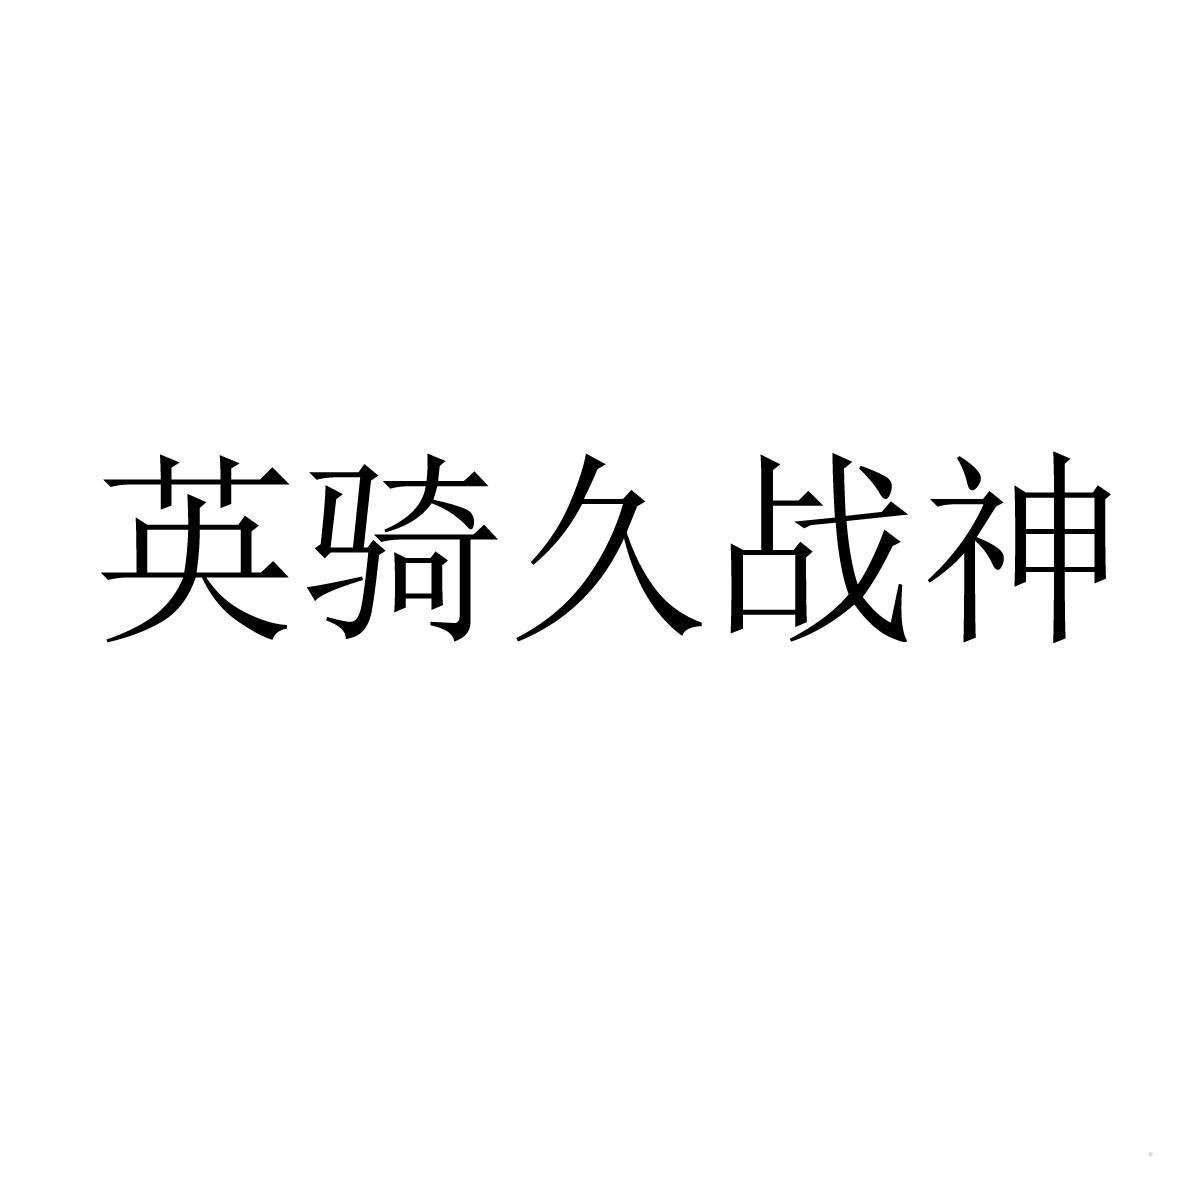 英骑久战神logo